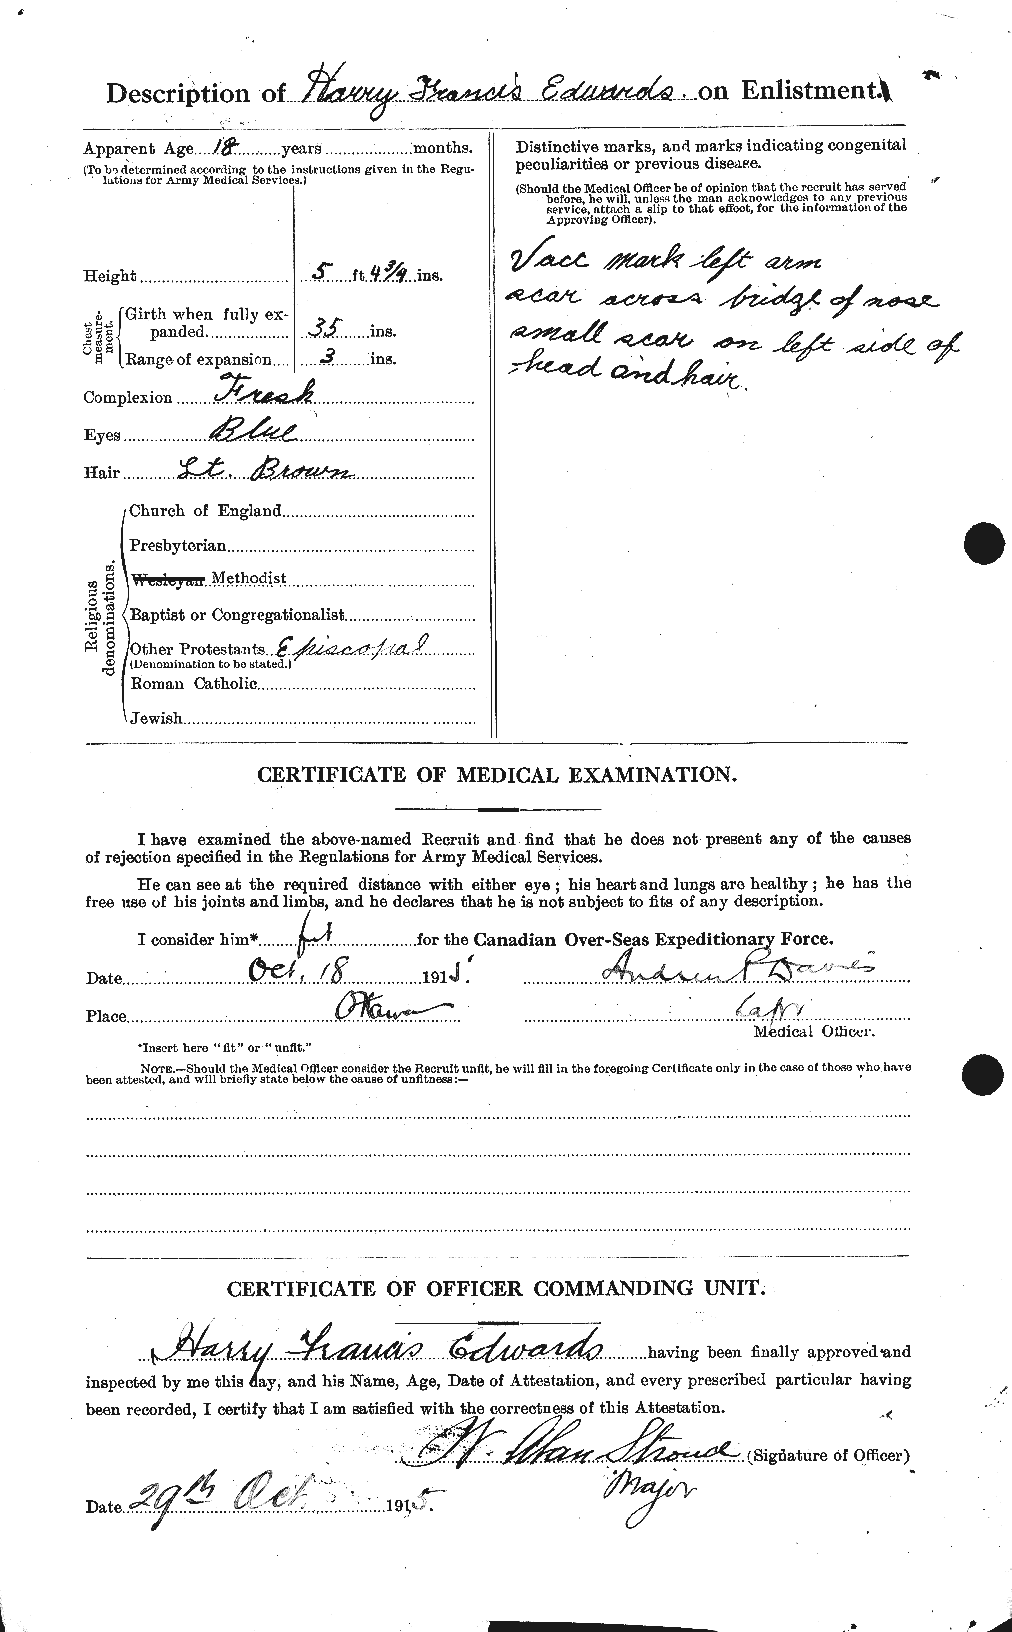 Dossiers du Personnel de la Première Guerre mondiale - CEC 309741b